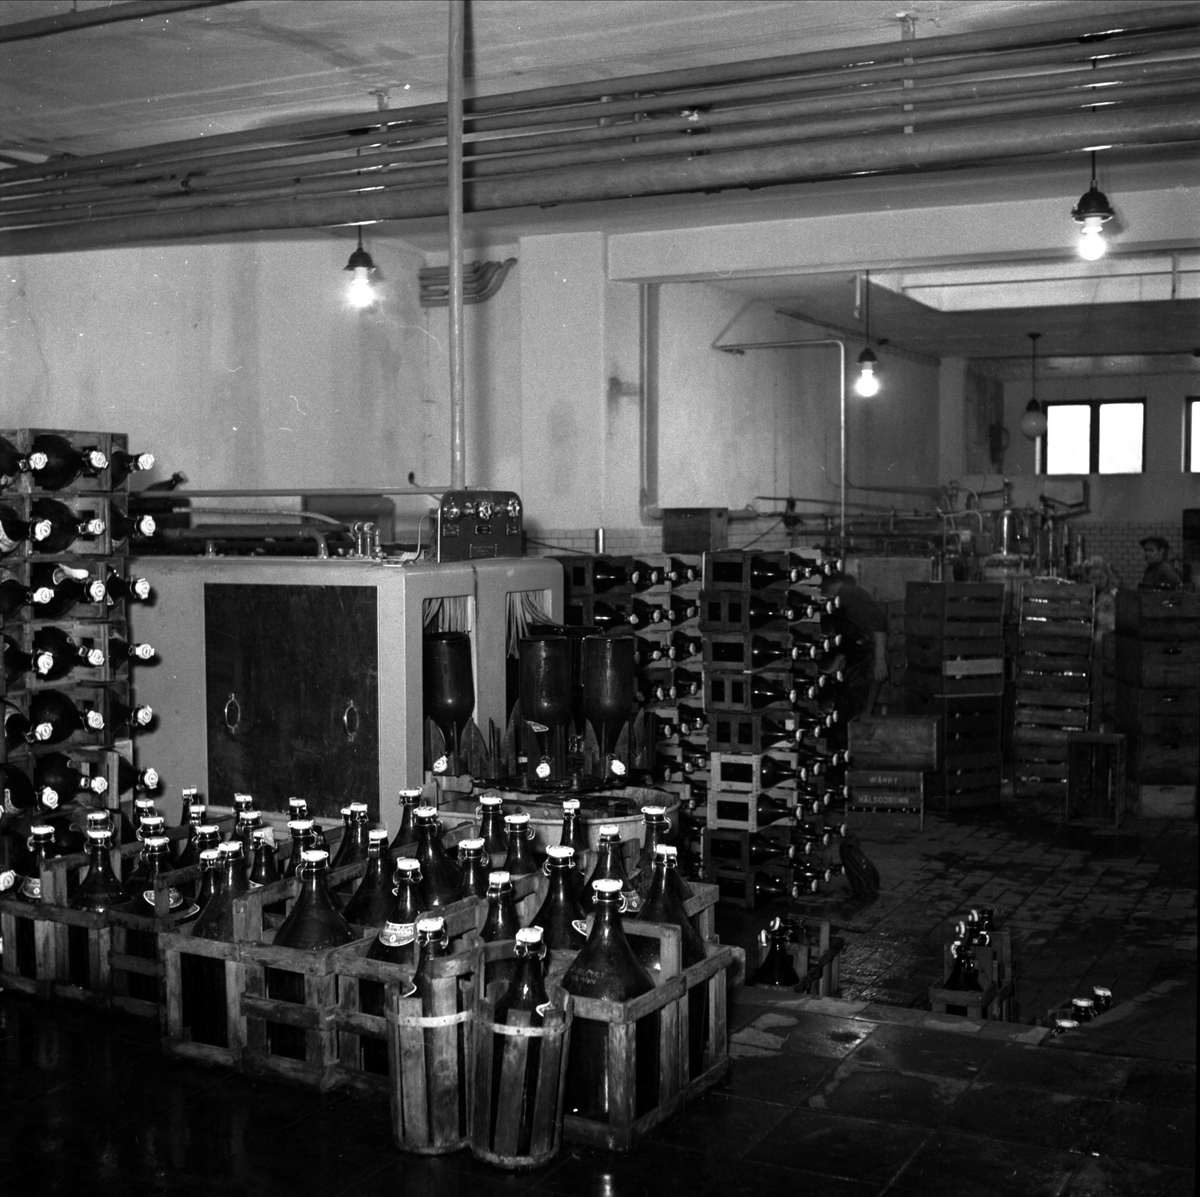 "Mejeri blev bryggeri", Storvreta Bryggeri, Rasbo, Uppland 1951